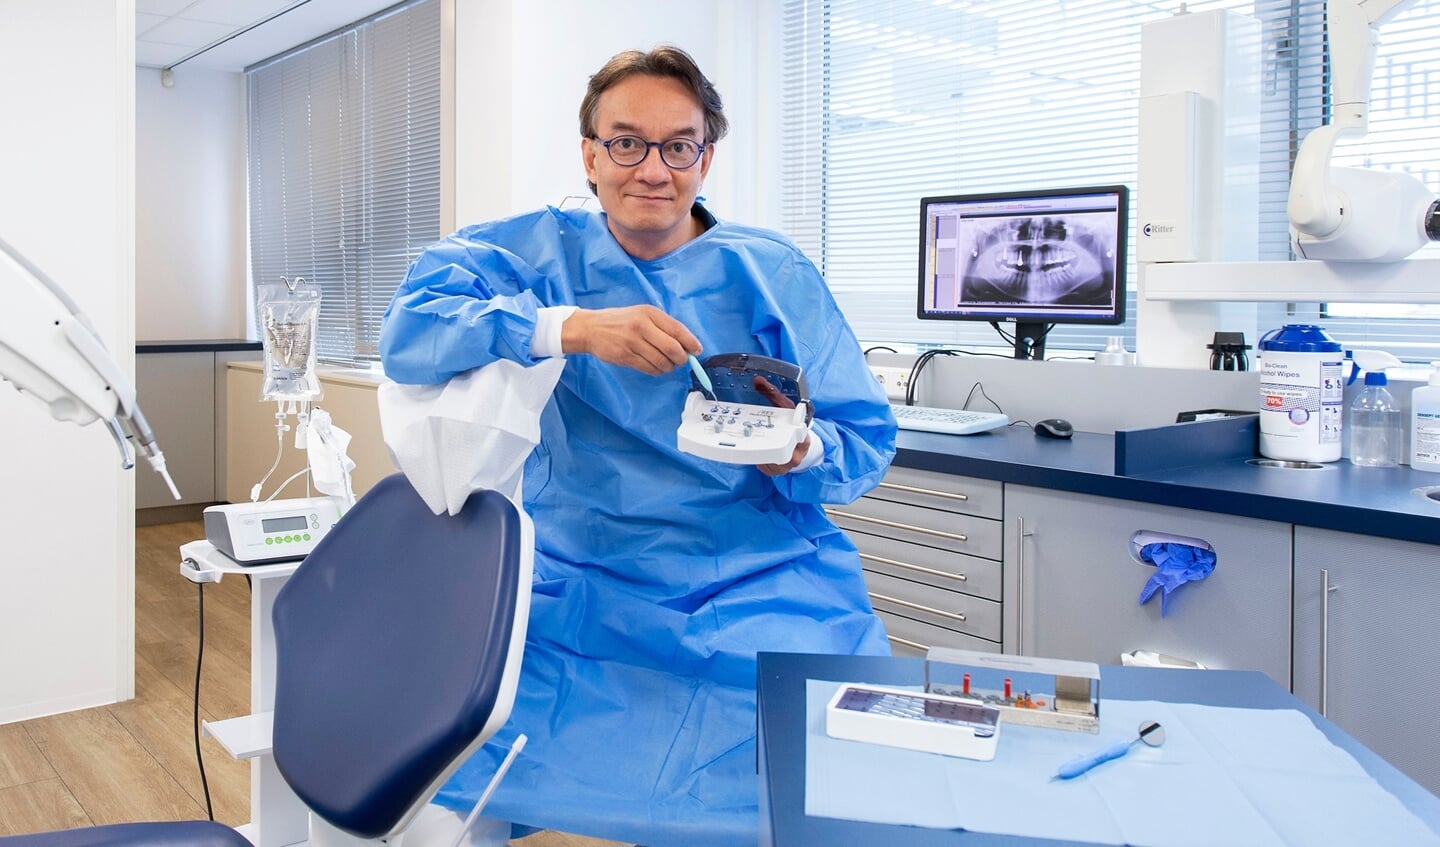 Tandarts-implantoloog René Overmars werkt voor zijn behandelingen met innovatieve technieken.